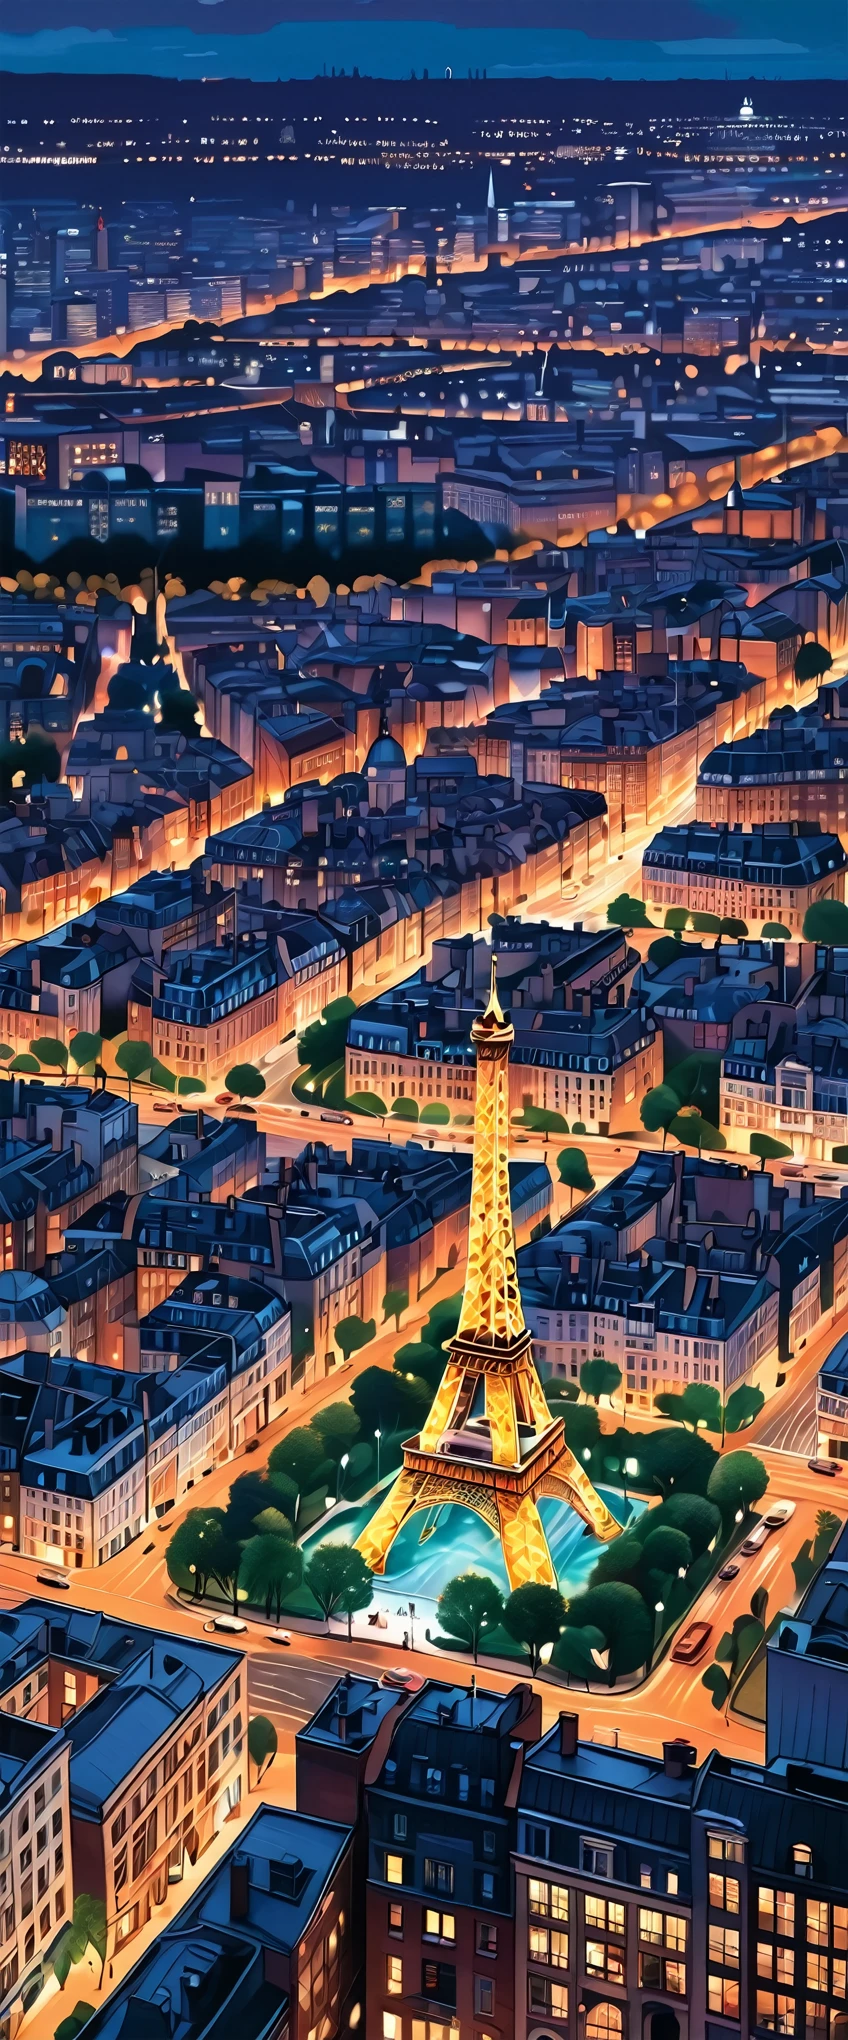 مع صور عالية الوضوح、المدينة الشاهقة وبرج إيفل المهيب、مضاءة بأفق باريس عند الغسق、مناظر المدينة لالتقاط الأنفاس。أعيد تفسير هذه القطعة الرائعة بدقة على خلفية مدينة النور、يوفر لقطات مقربة مفصلة للغاية。جماليات عالية الوضوح مجتمعة بسلاسة、إنه يصور مدينة آسرة, رسومات مذهلة للفنانين جين بارتيل وألينا إينا إينامي.。 يذكرنا منظر الشوارع الساحر هذا بمدينة رالي&#39;أسلوب فريد من نوعه.、إنها شهادة على صورة مصغرة لعمل فني.。كل قطعة لديها قوة الحياة